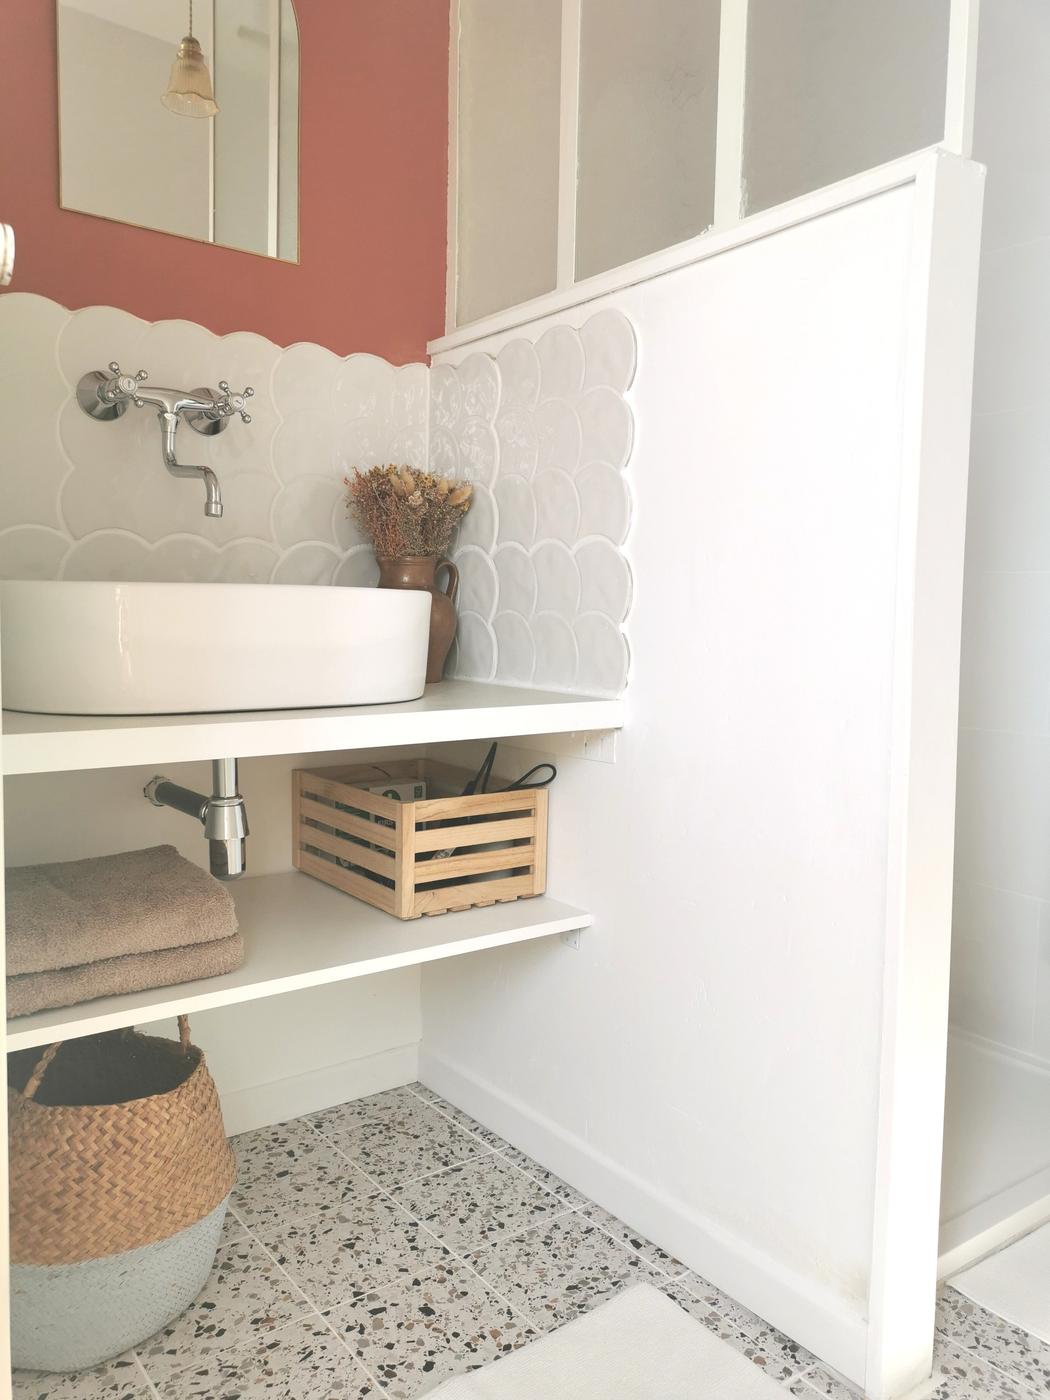 Carrelage uni blanc sans motifs 30x30 cm dans une salle de bain aux murs terracotta avec vasque et accessoires en bois